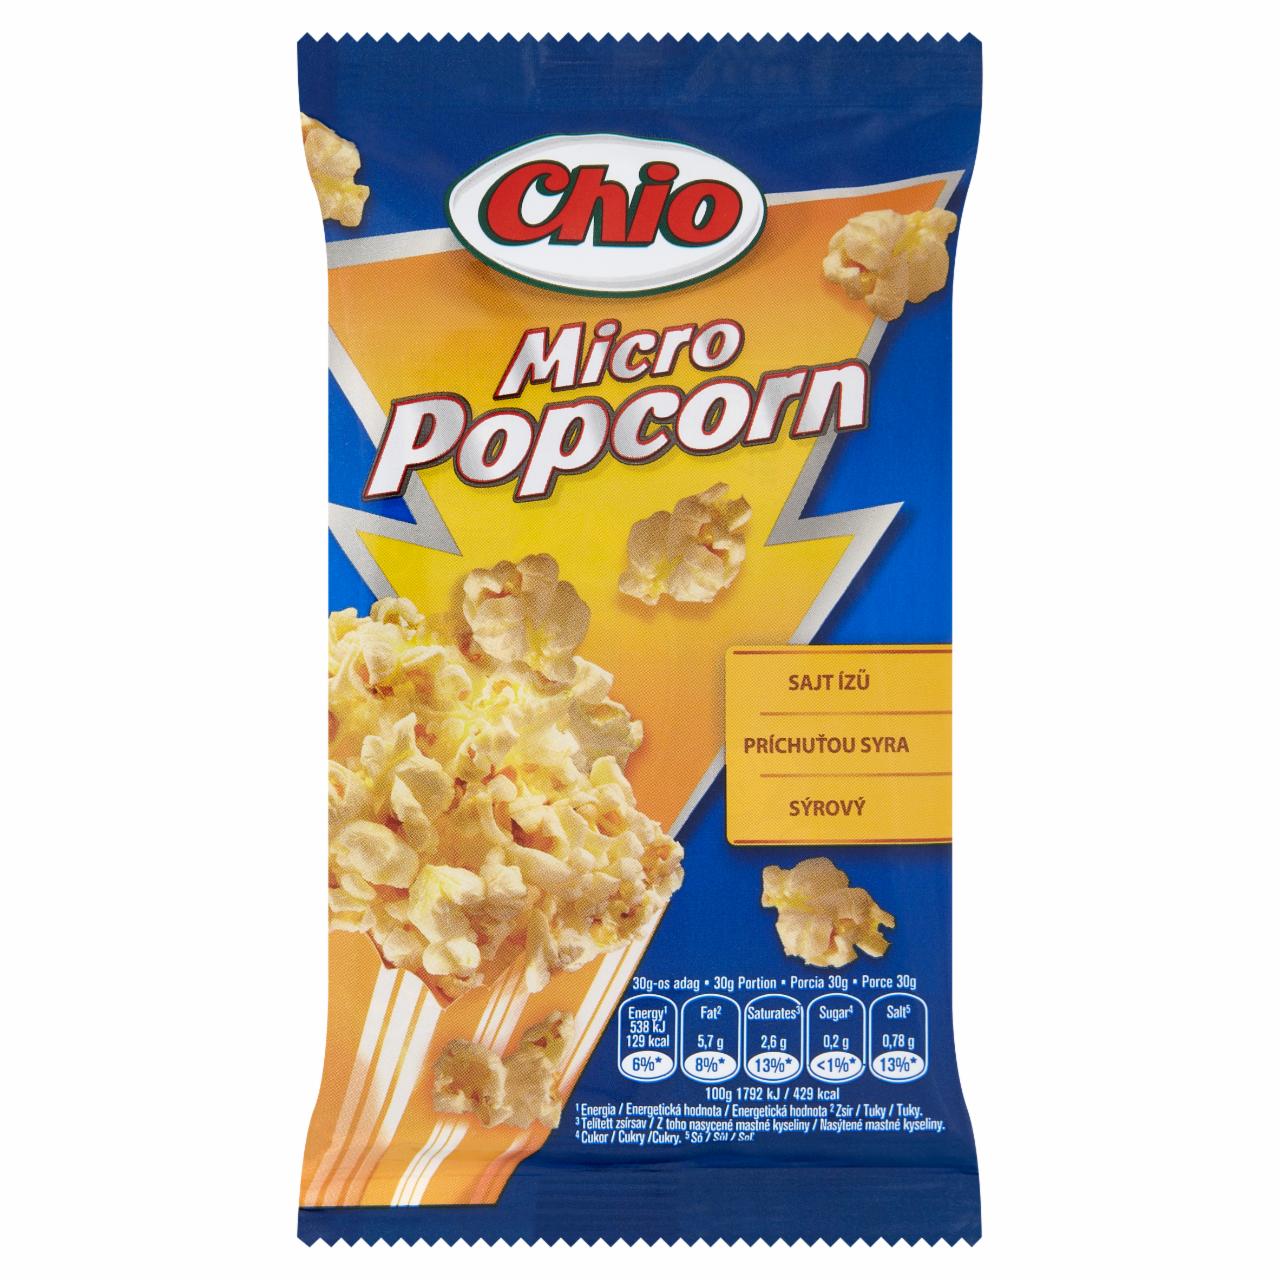 Képek - Chio Micro Popcorn sajtízű kipattogtatható kukorica 80 g